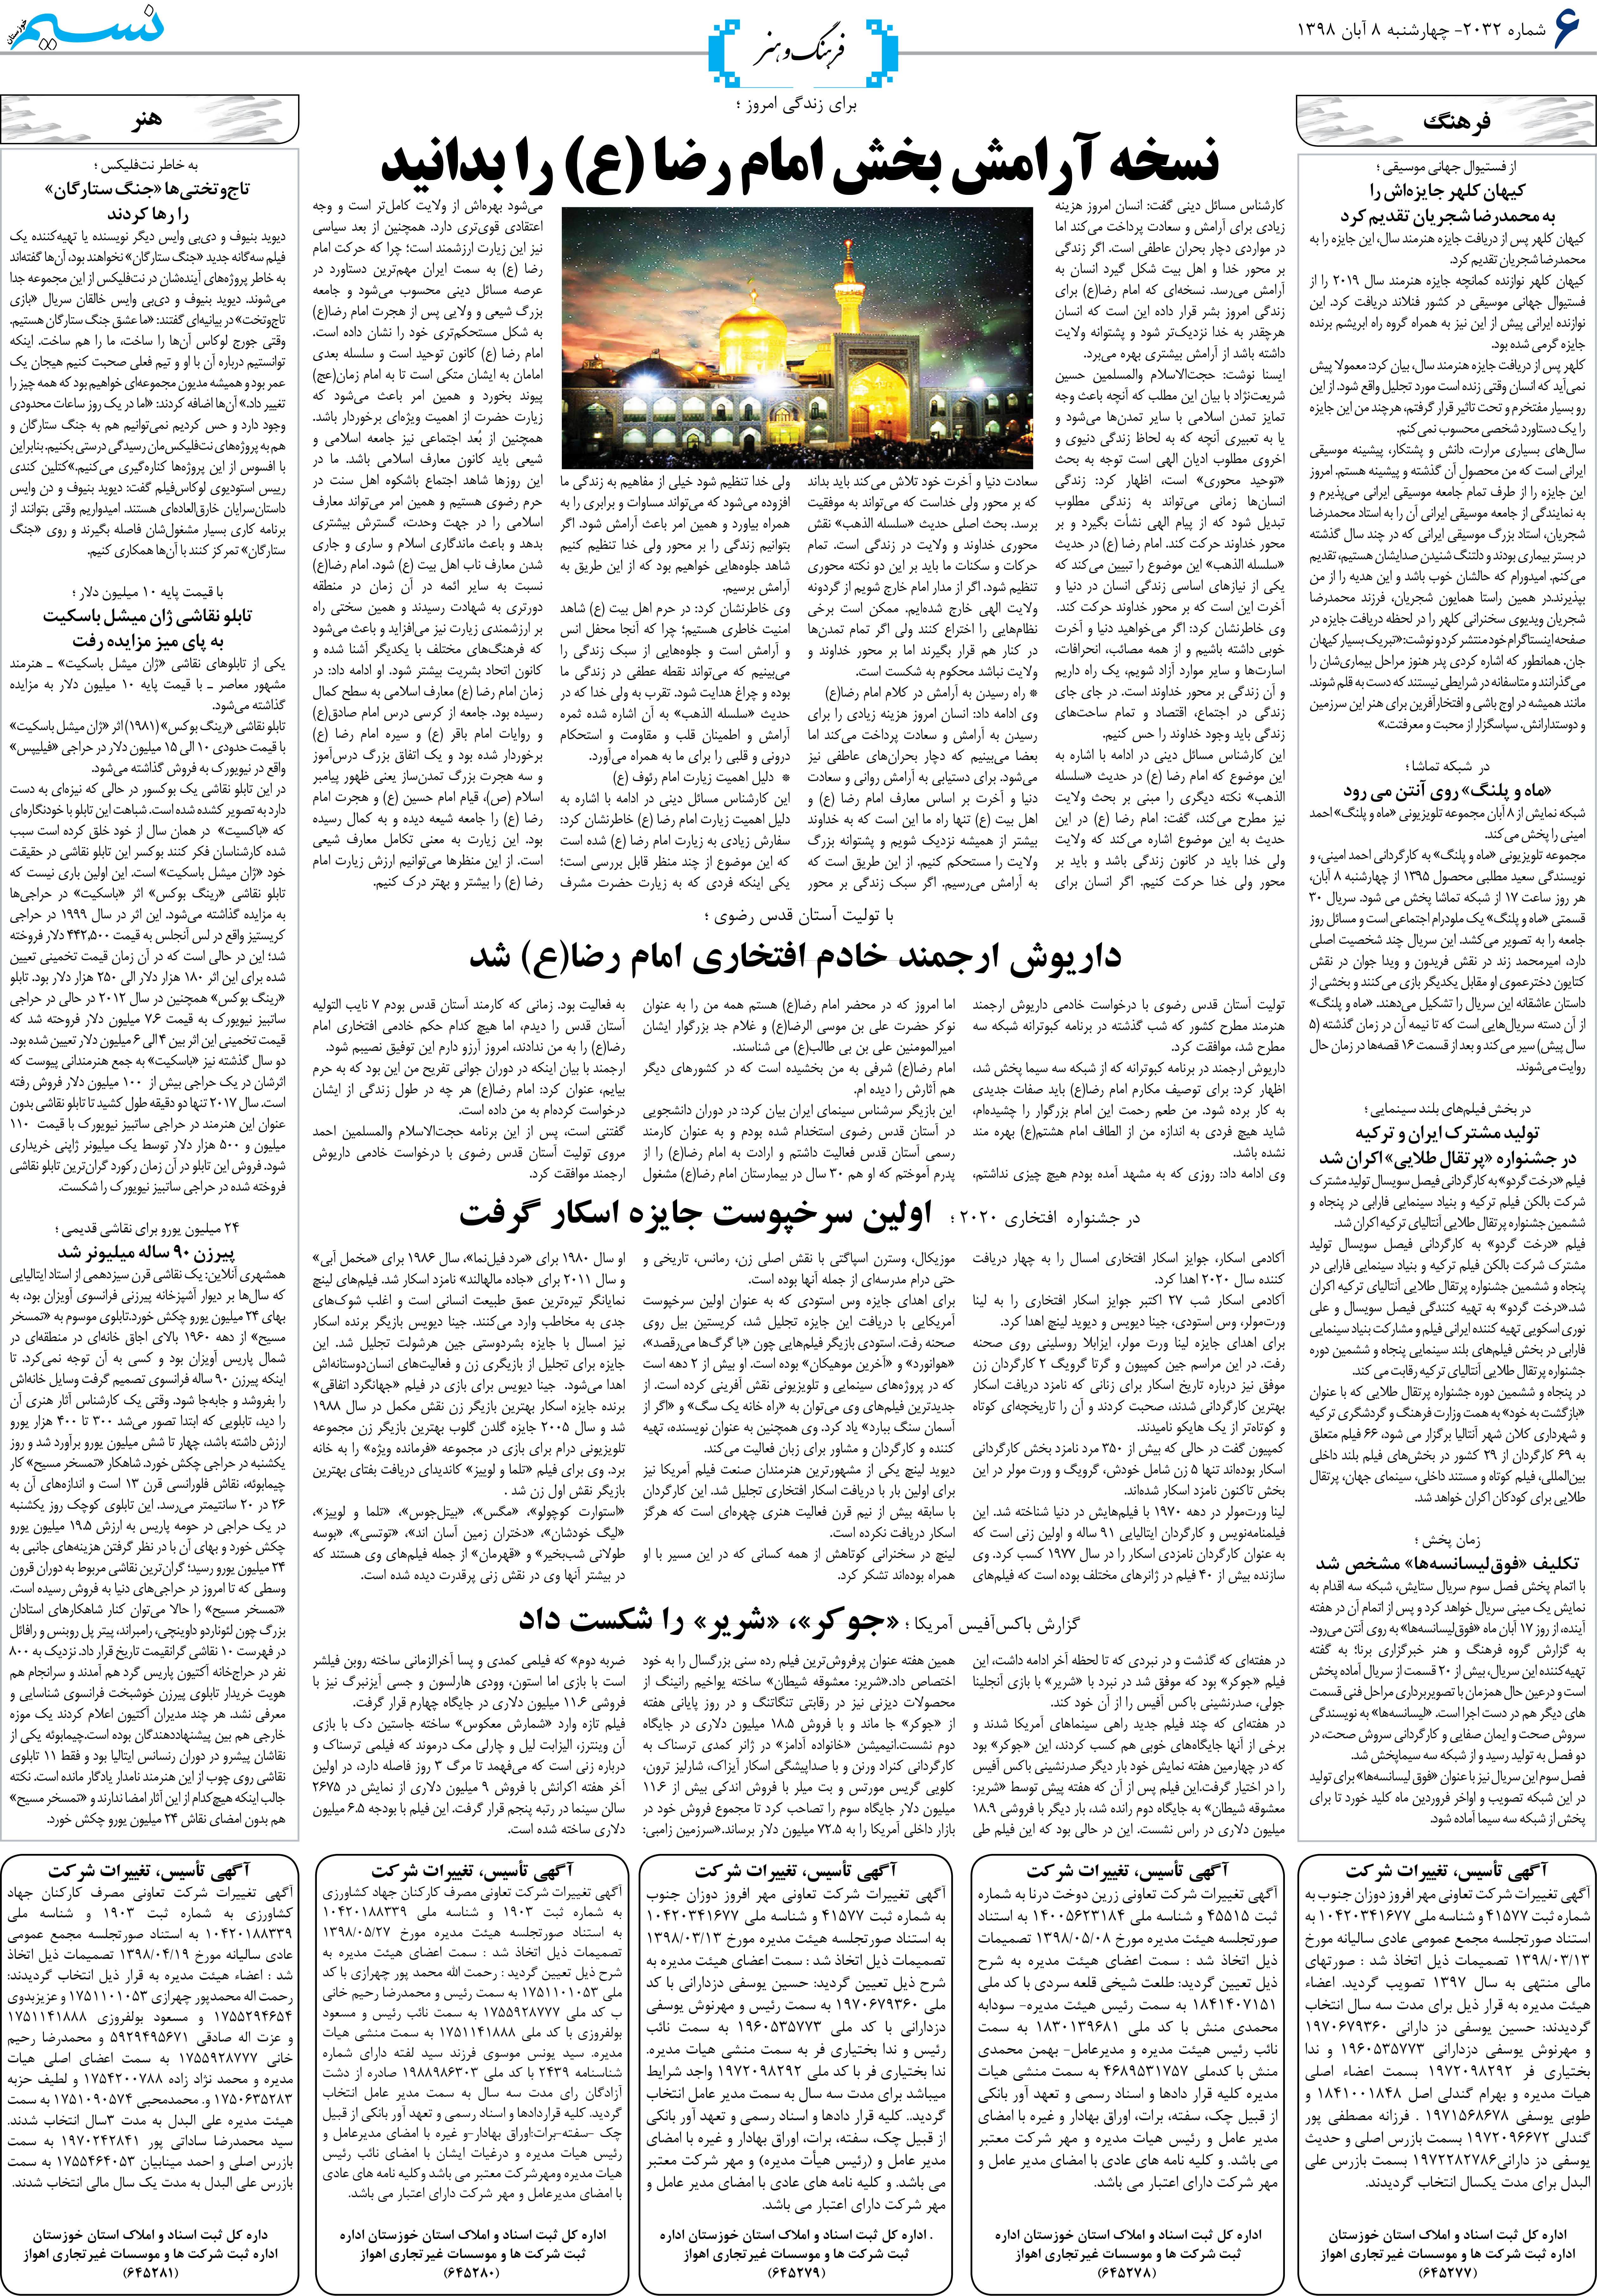 صفحه فرهنگ و هنر روزنامه نسیم شماره 2032